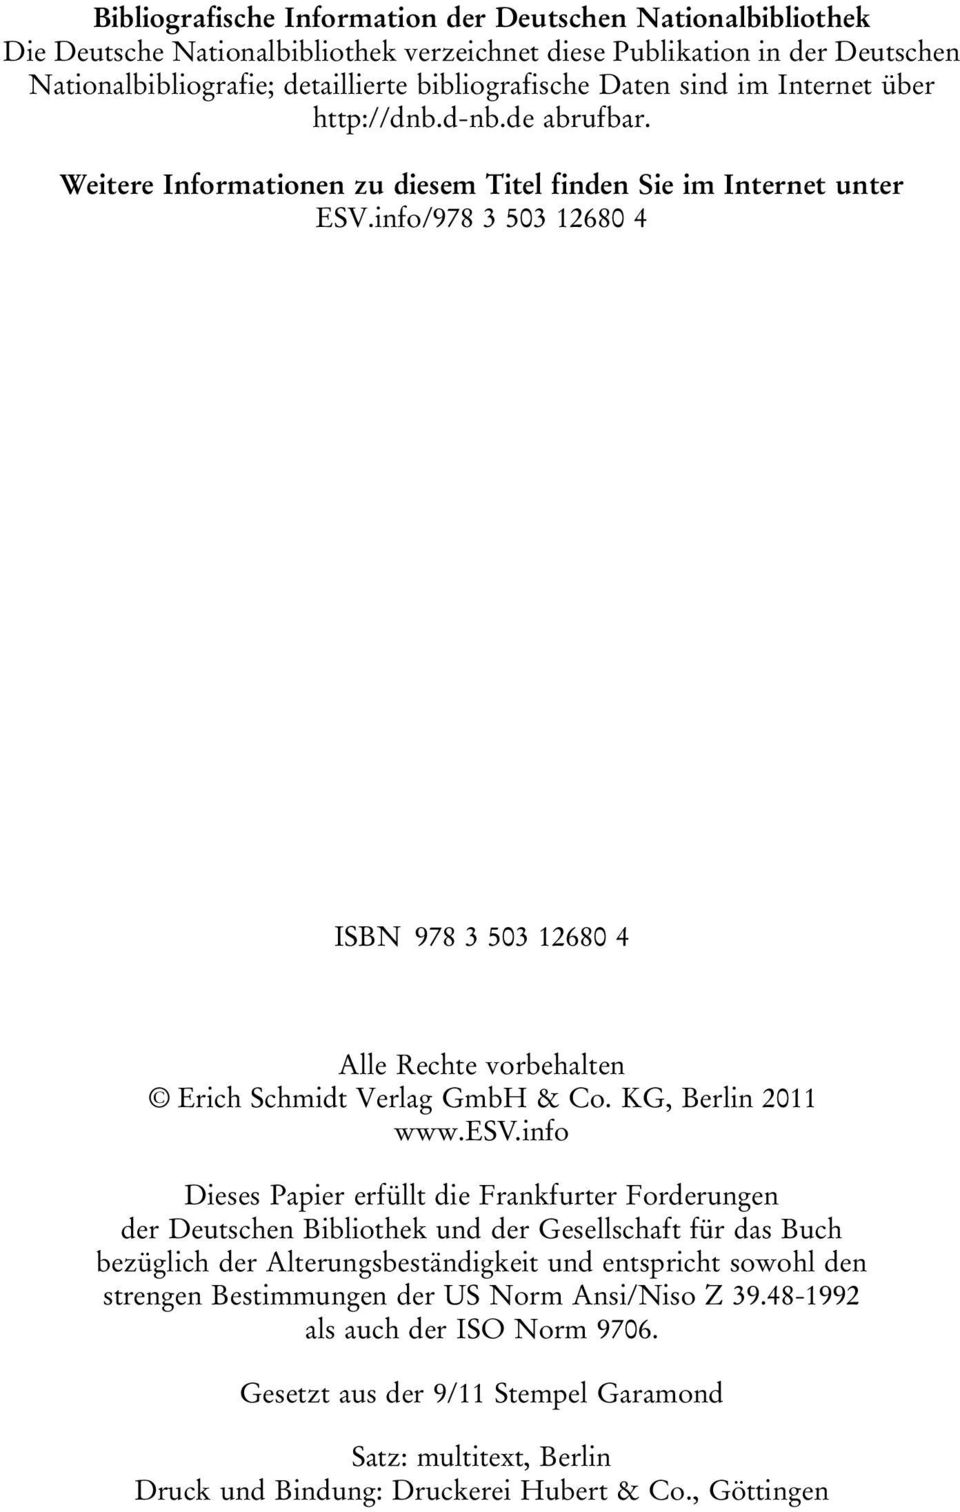 info/978 3 503 12680 4 ISBN 978 3 503 12680 4 Alle Rechte vorbehalten Erich Schmidt Verlag GmbH & Co. KG, Berlin 2011 www.esv.